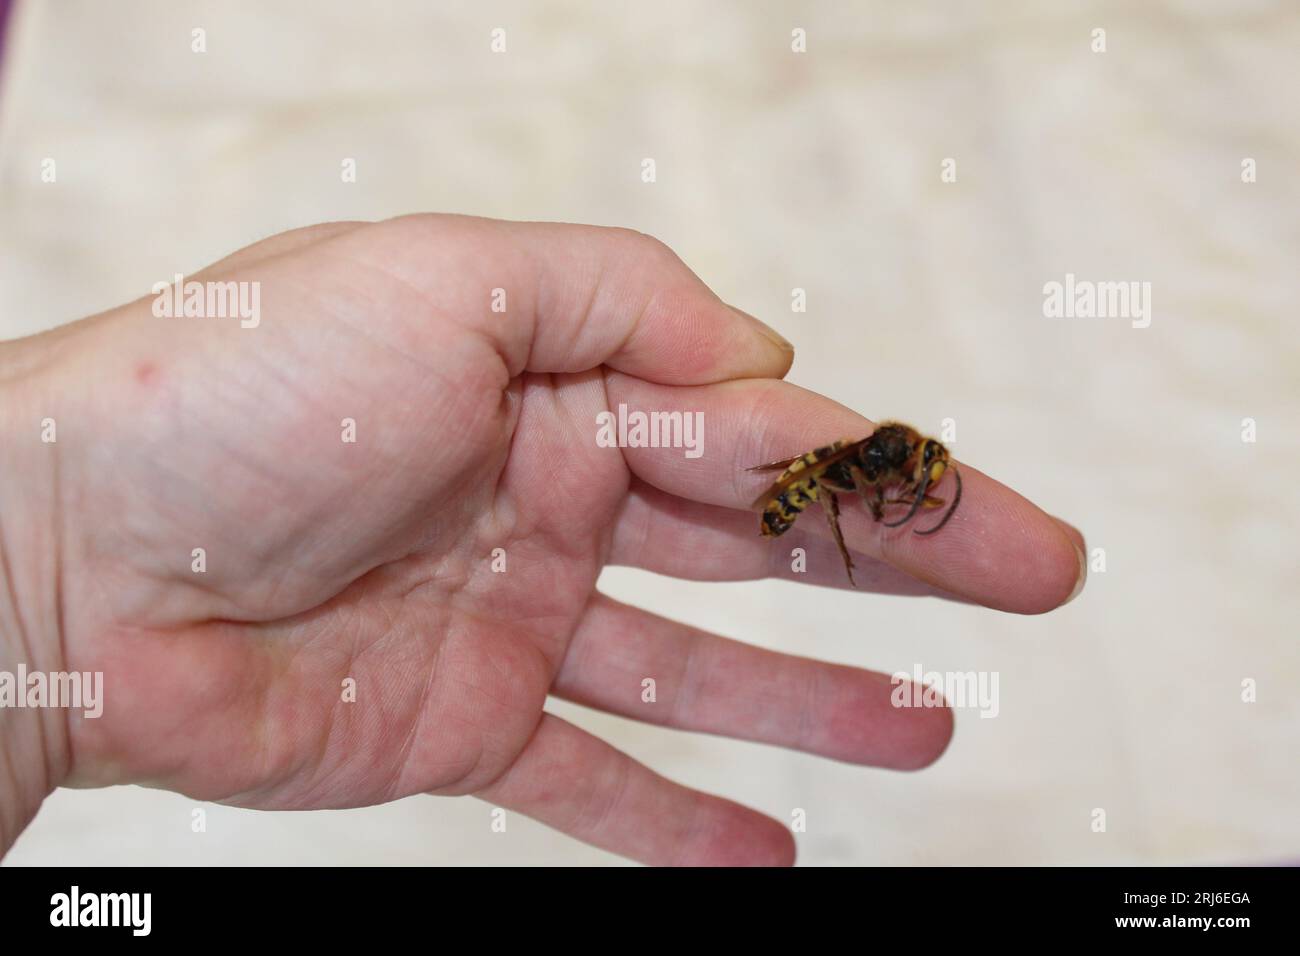 Un'enorme vespa nella mano di una donna Foto Stock